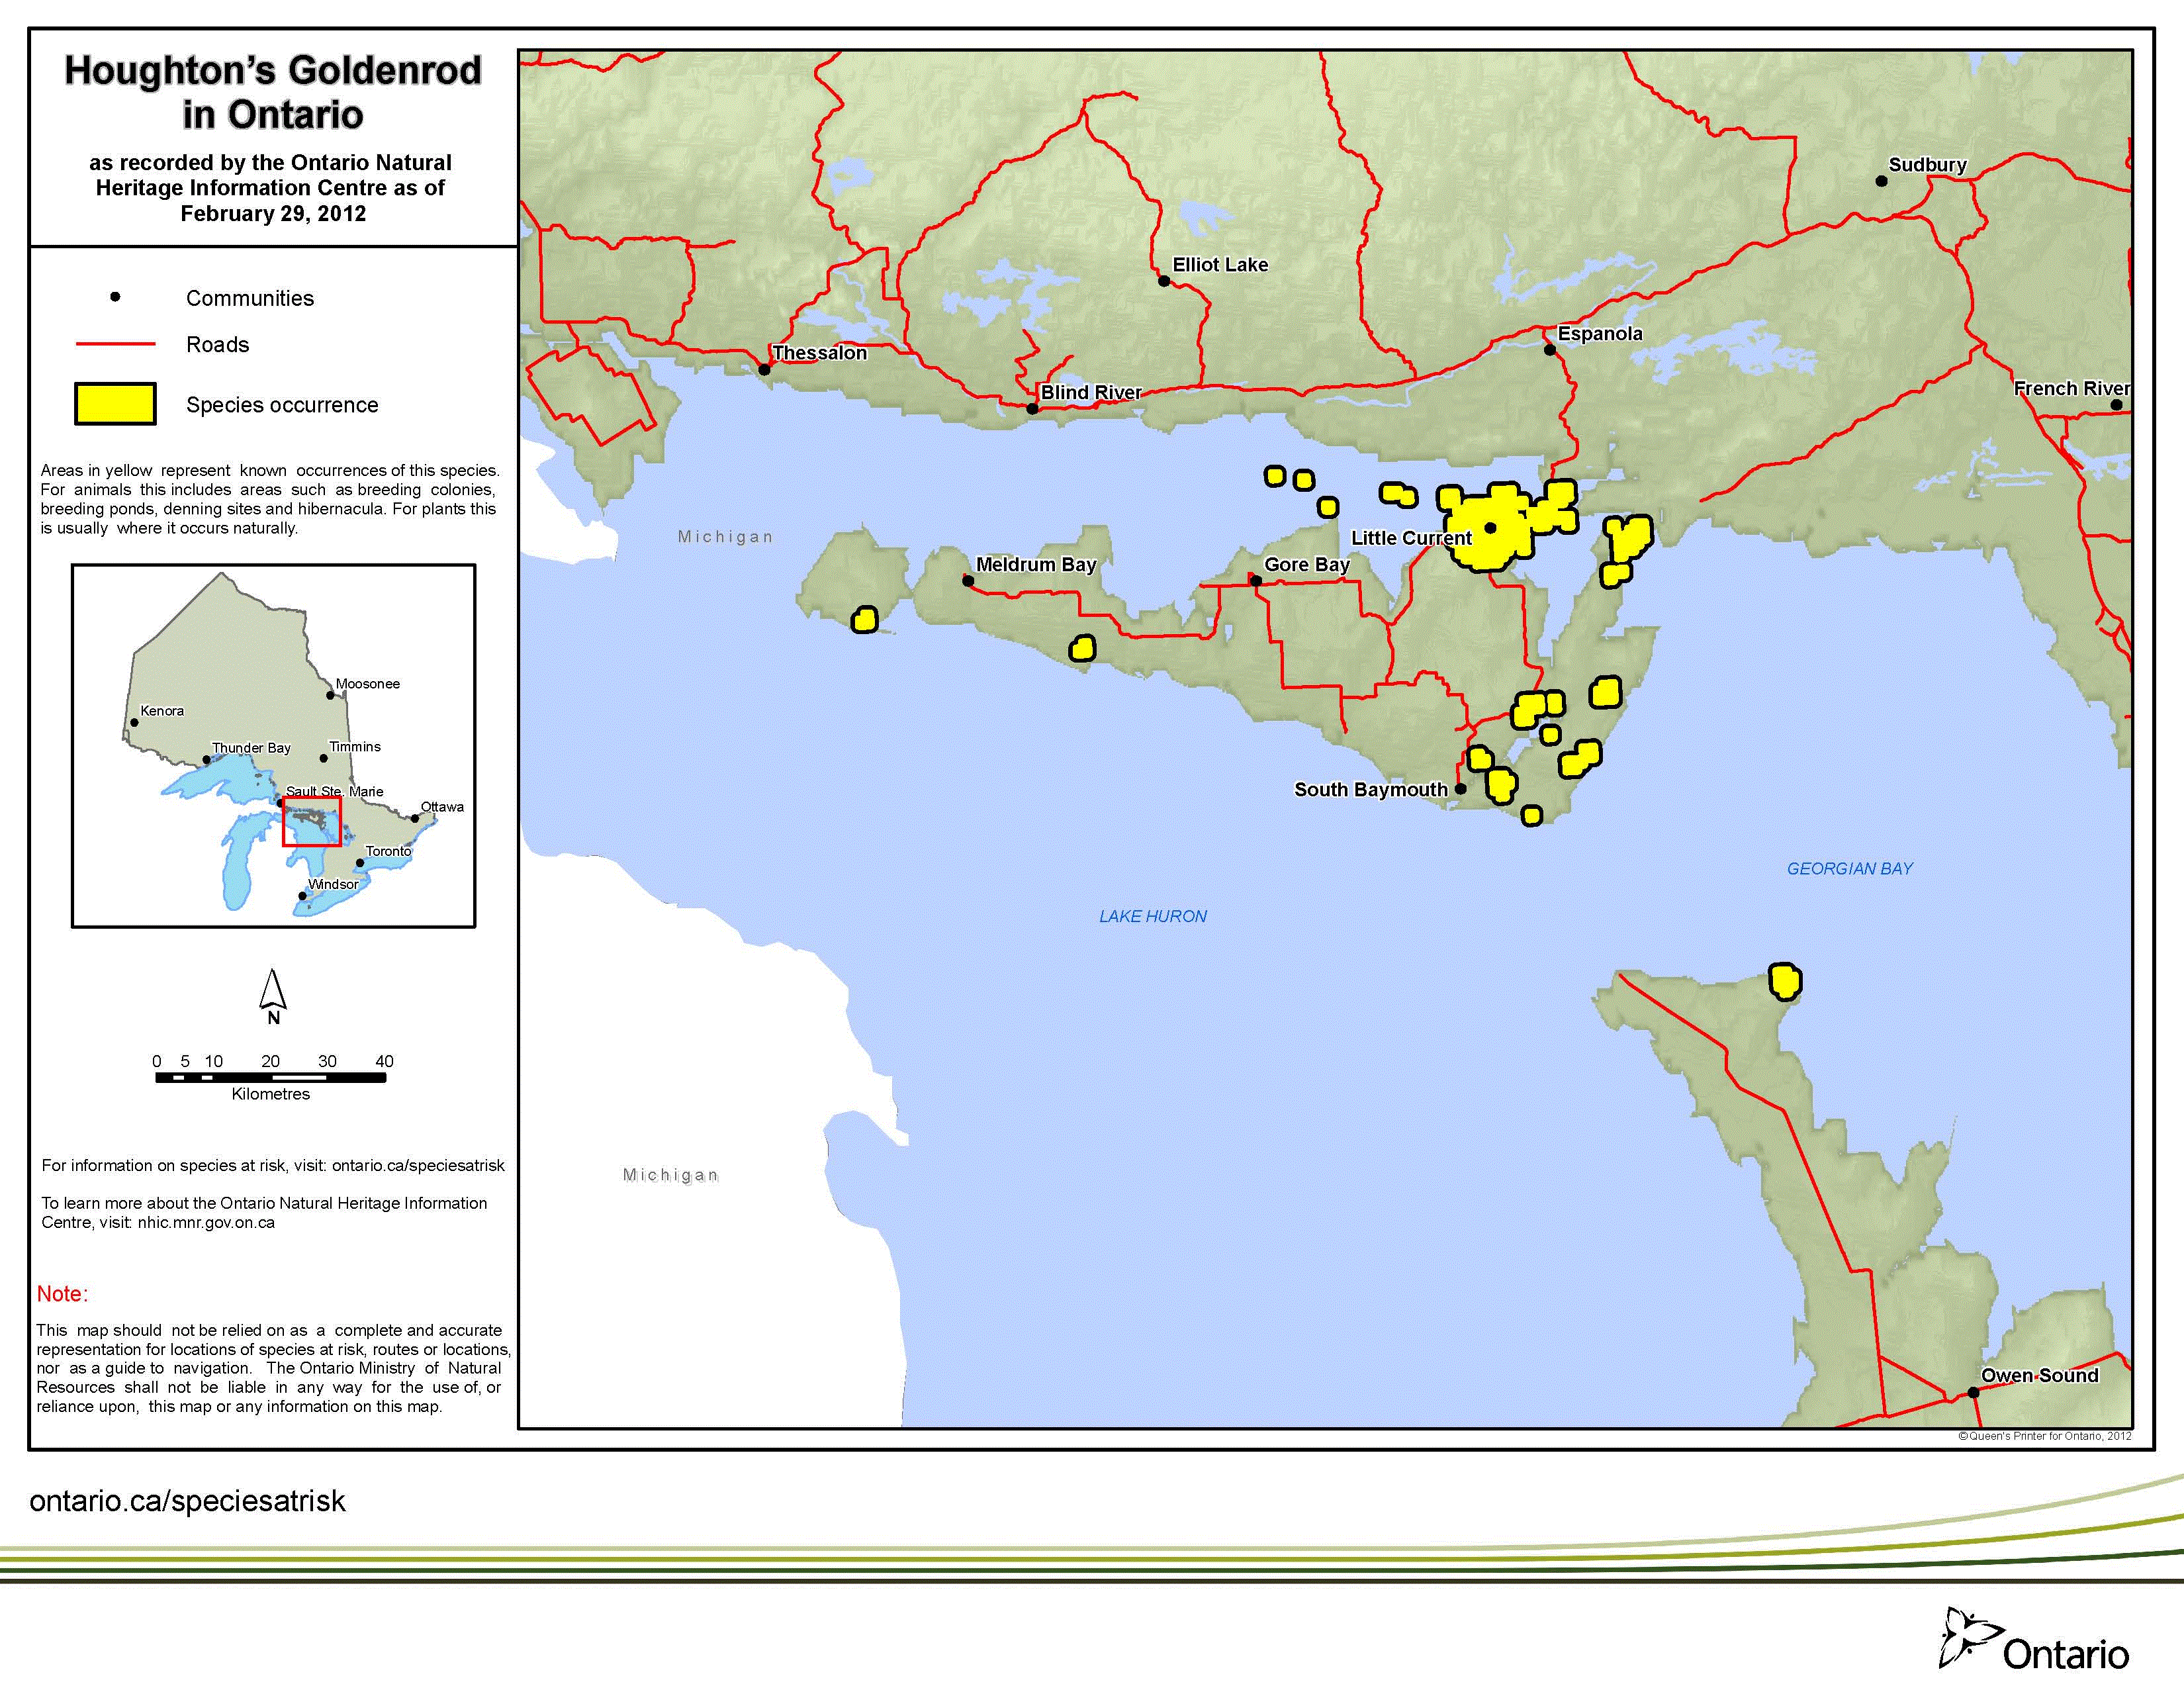 map of houghton’s goldenrod range